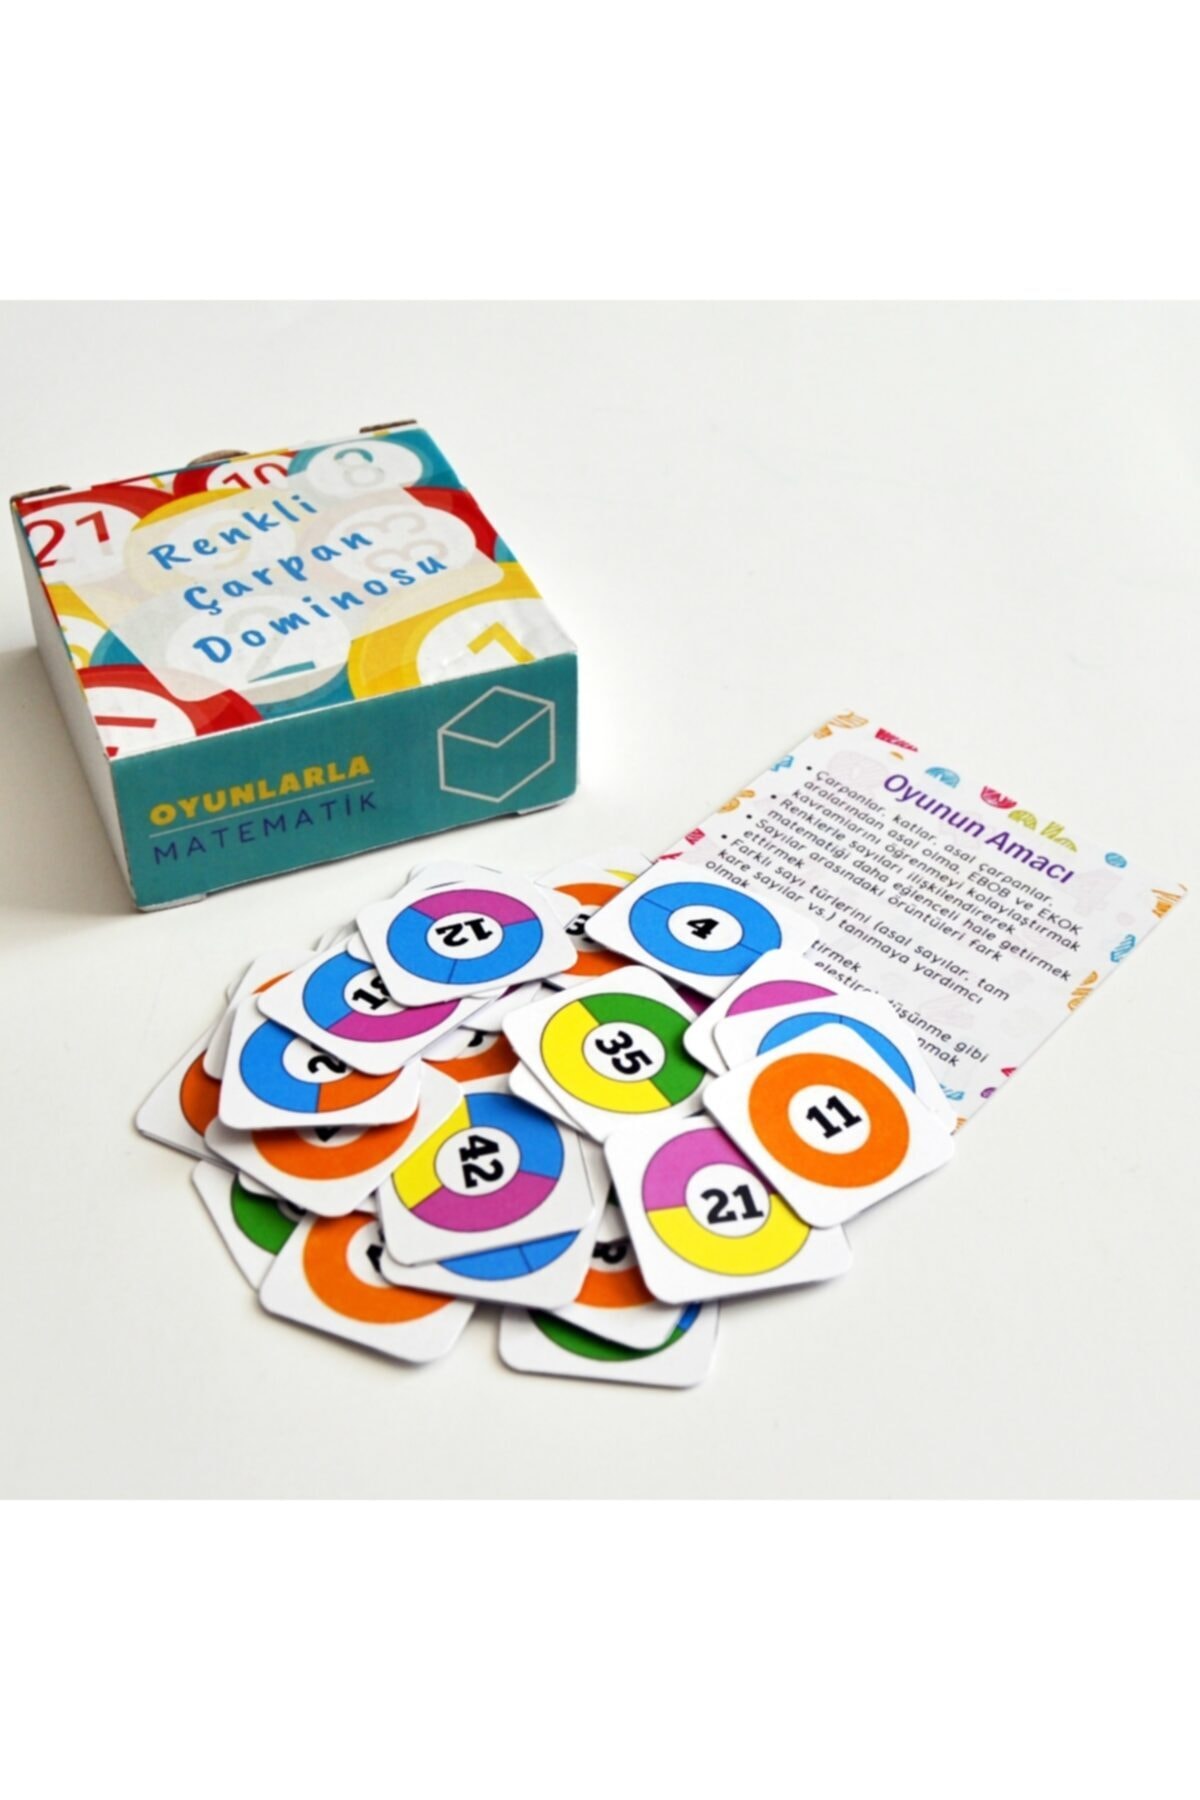 Oyunlarla Matematik Renkli Çarpan Dominosu - Matematik Işlem Sayılar Beceri Gelişim Eğitici Akıl Zeka Mantık Oyunu